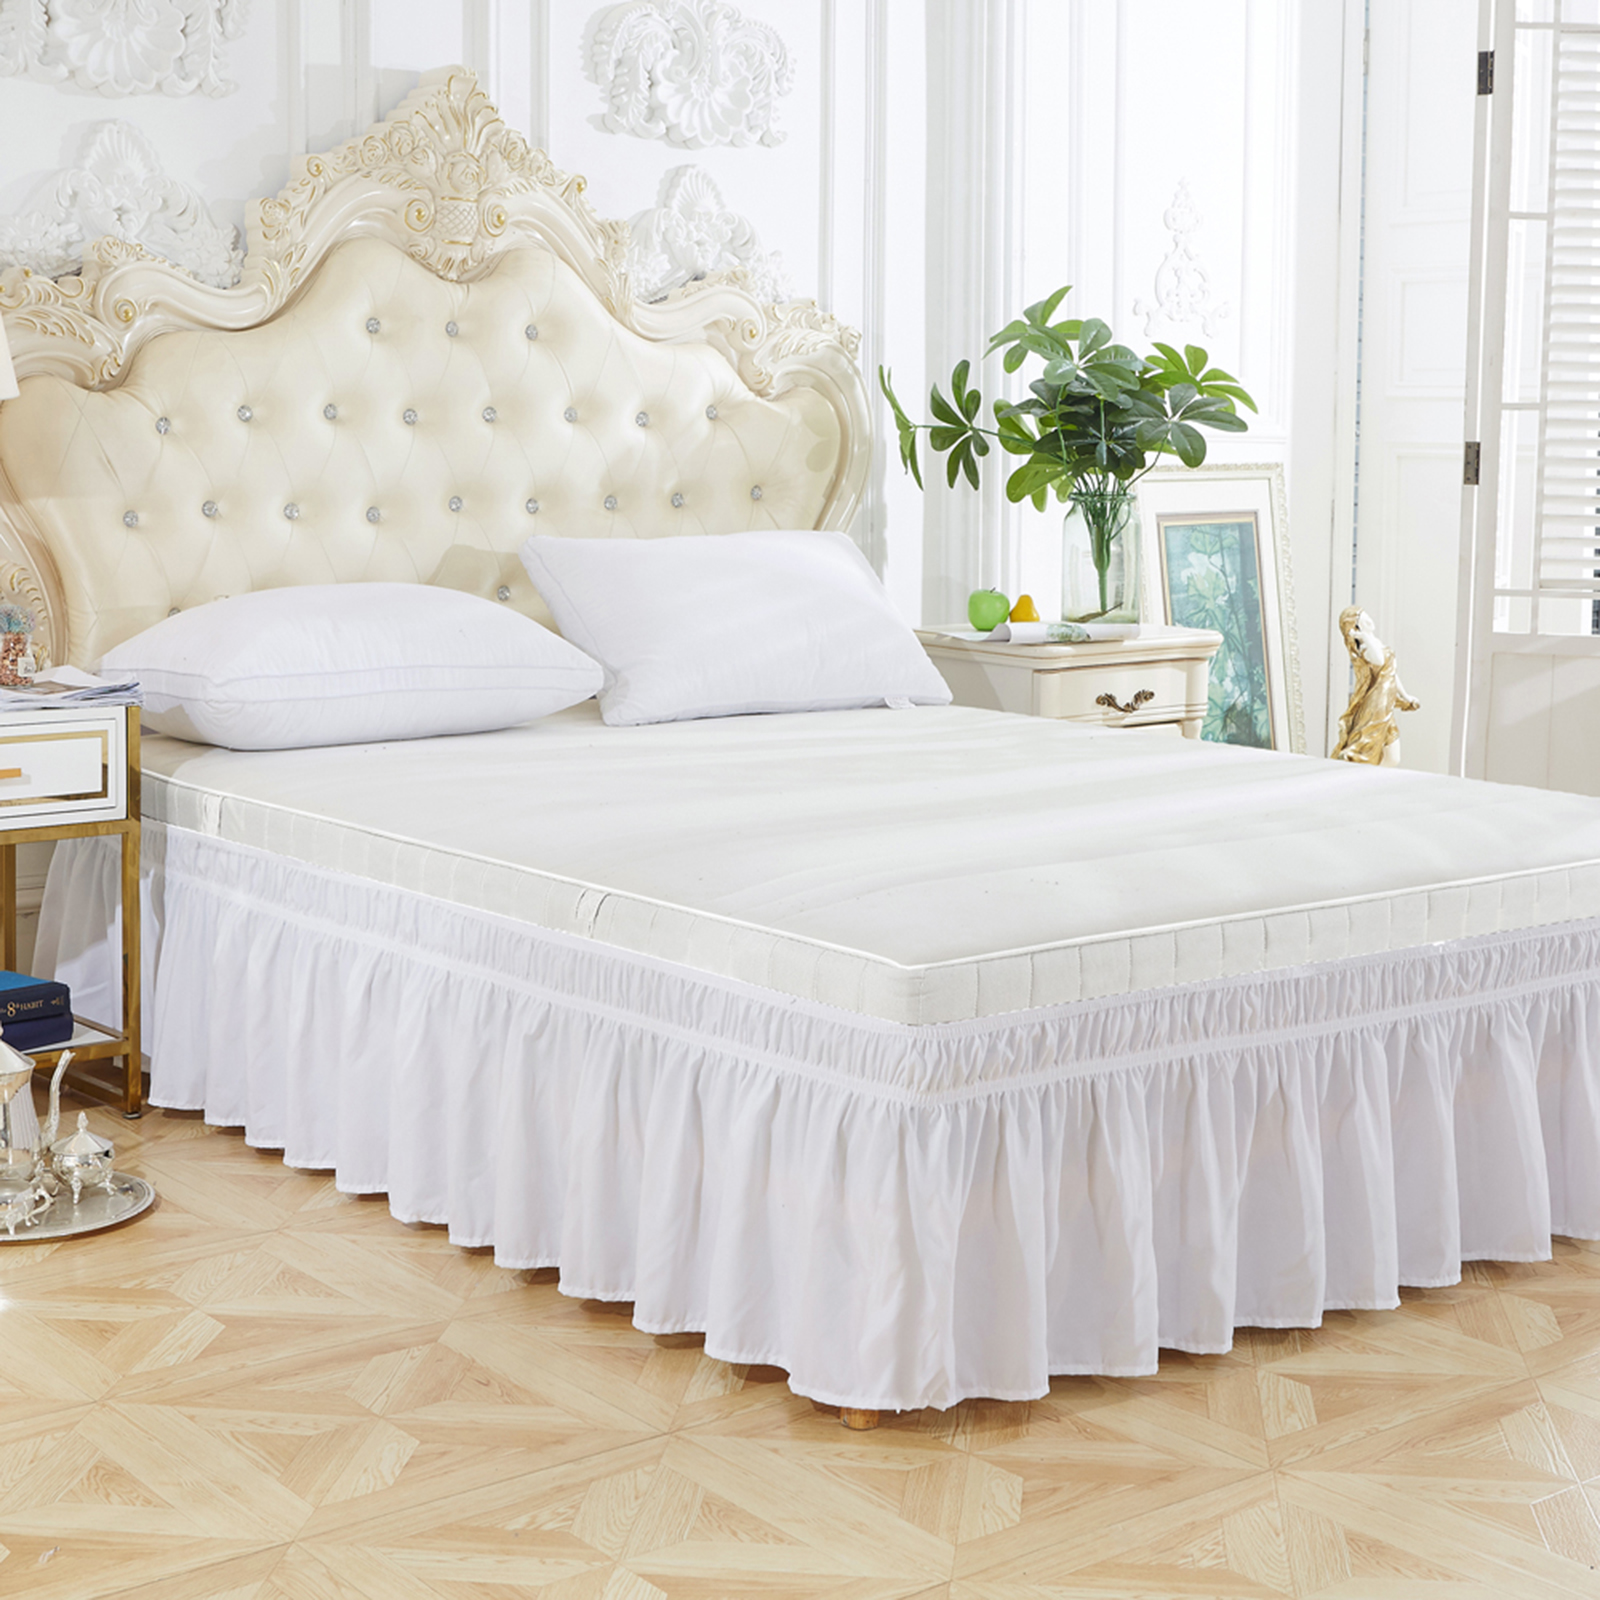 Juego de ropa de cama tamaño Queen de 8 piezas, color turquesa, suave y  sedoso, incluye 1 edredón plisado, 2 fundas de almohada, sábana encimera